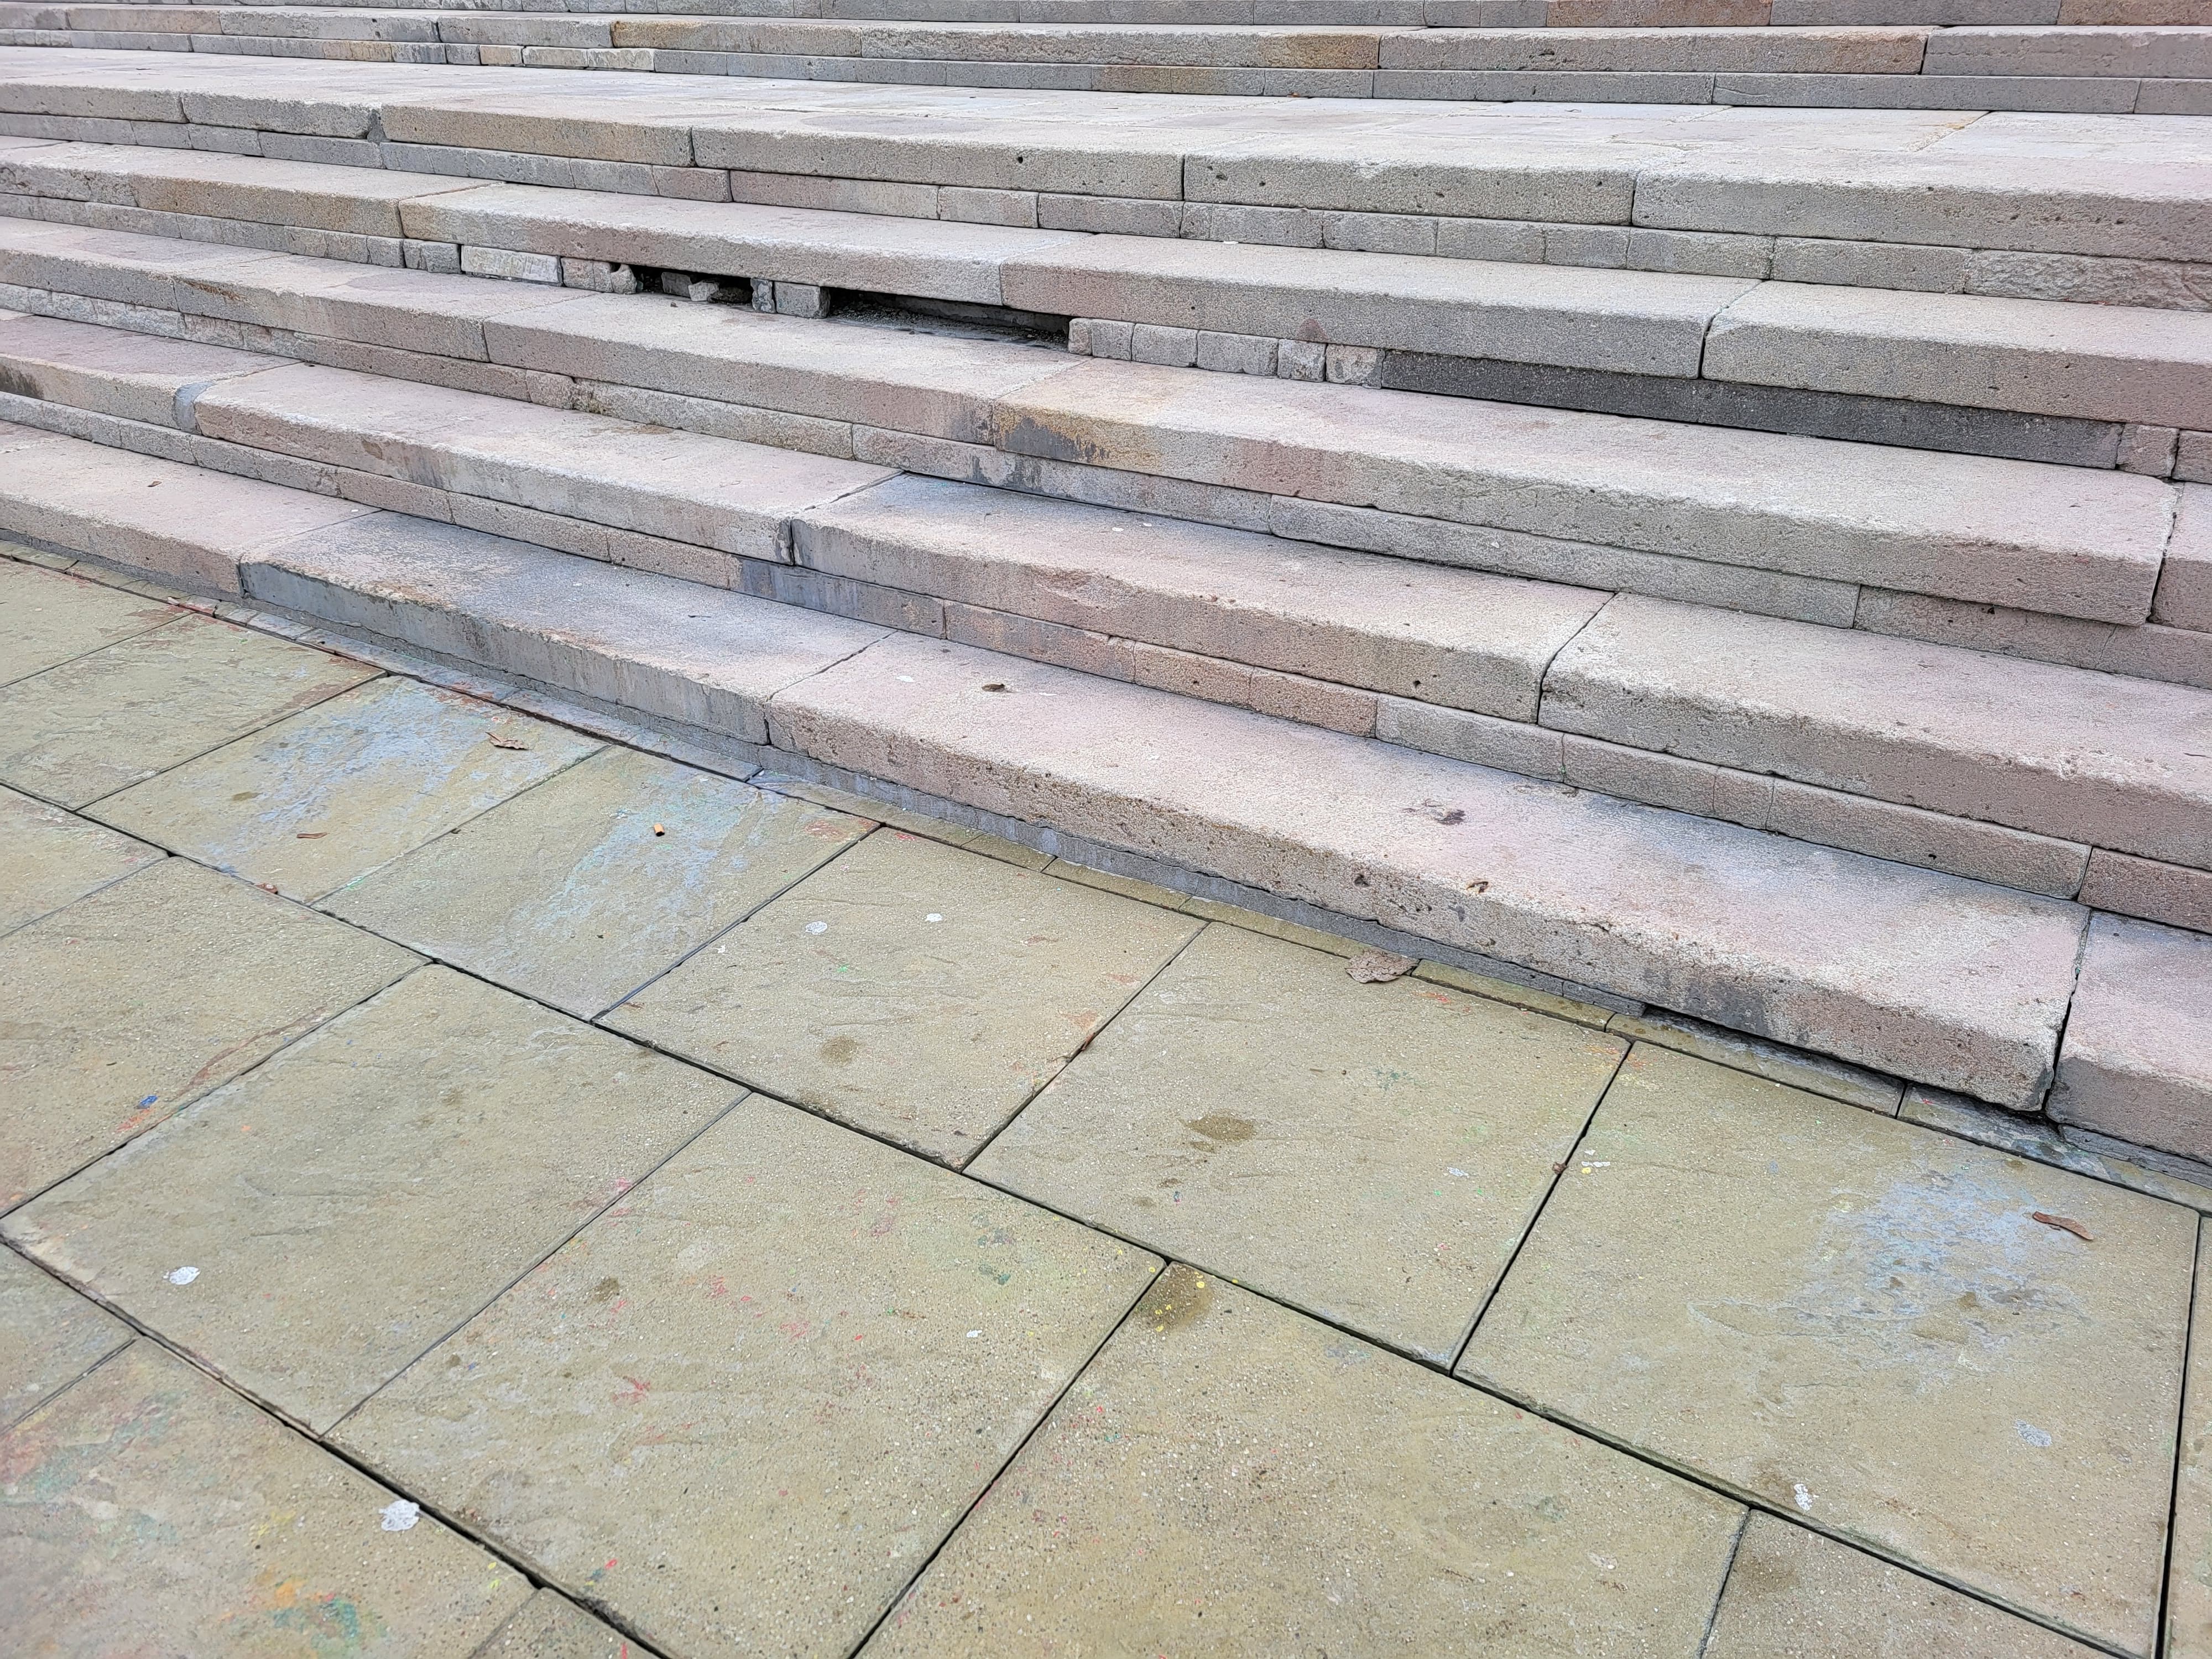 Malowidło z zamkowych schodów zostało usunięte. Prace te doprowadziły do licznych uszkodzeń (zdjęcia)